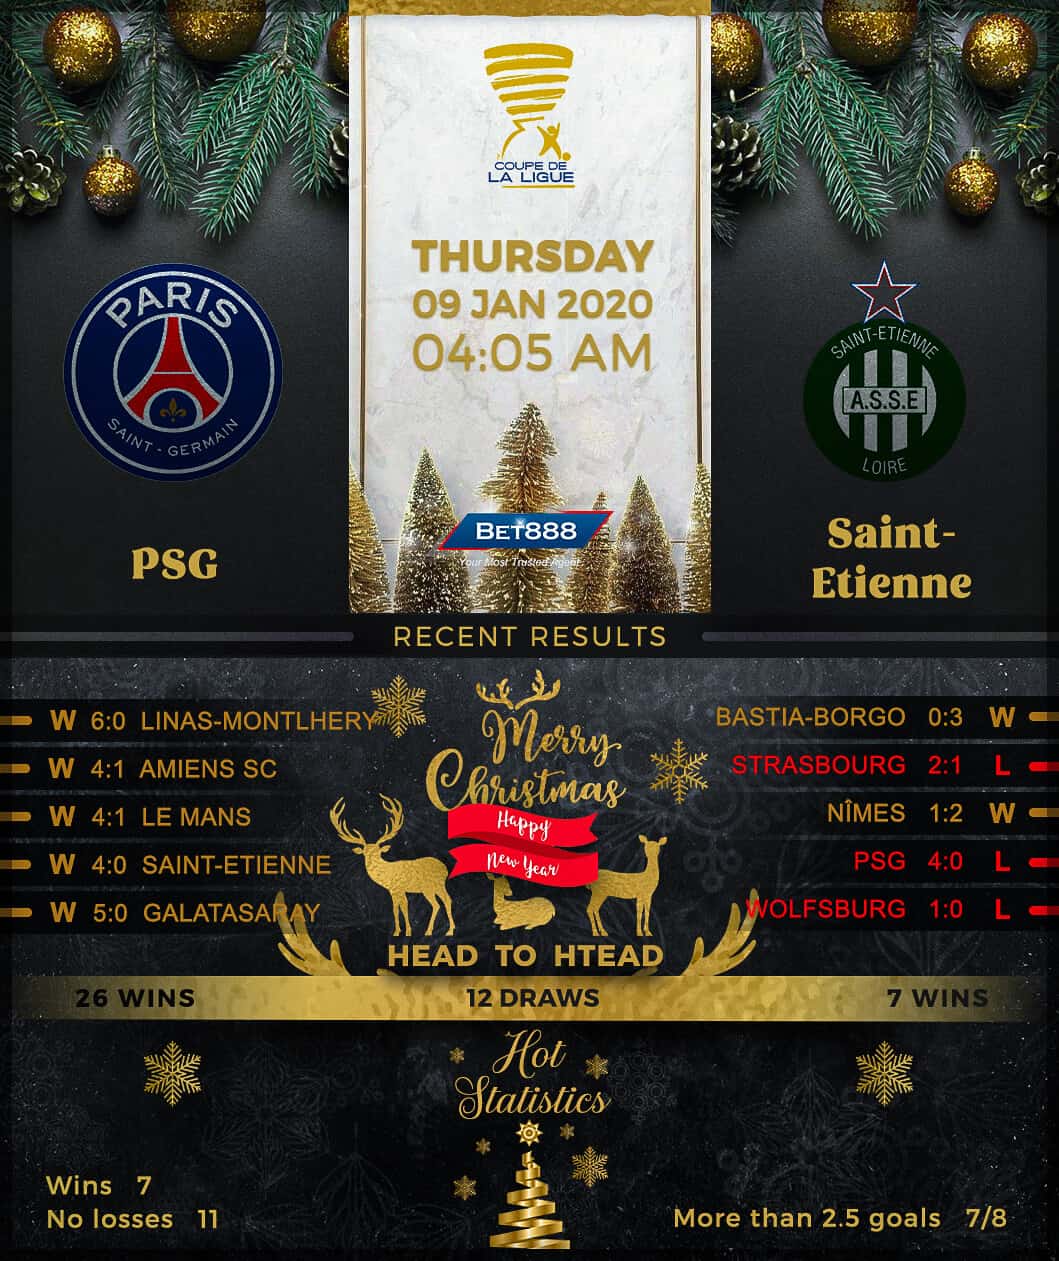 Paris Saint-Germain vs Saint-Etienne﻿ 09/01/20